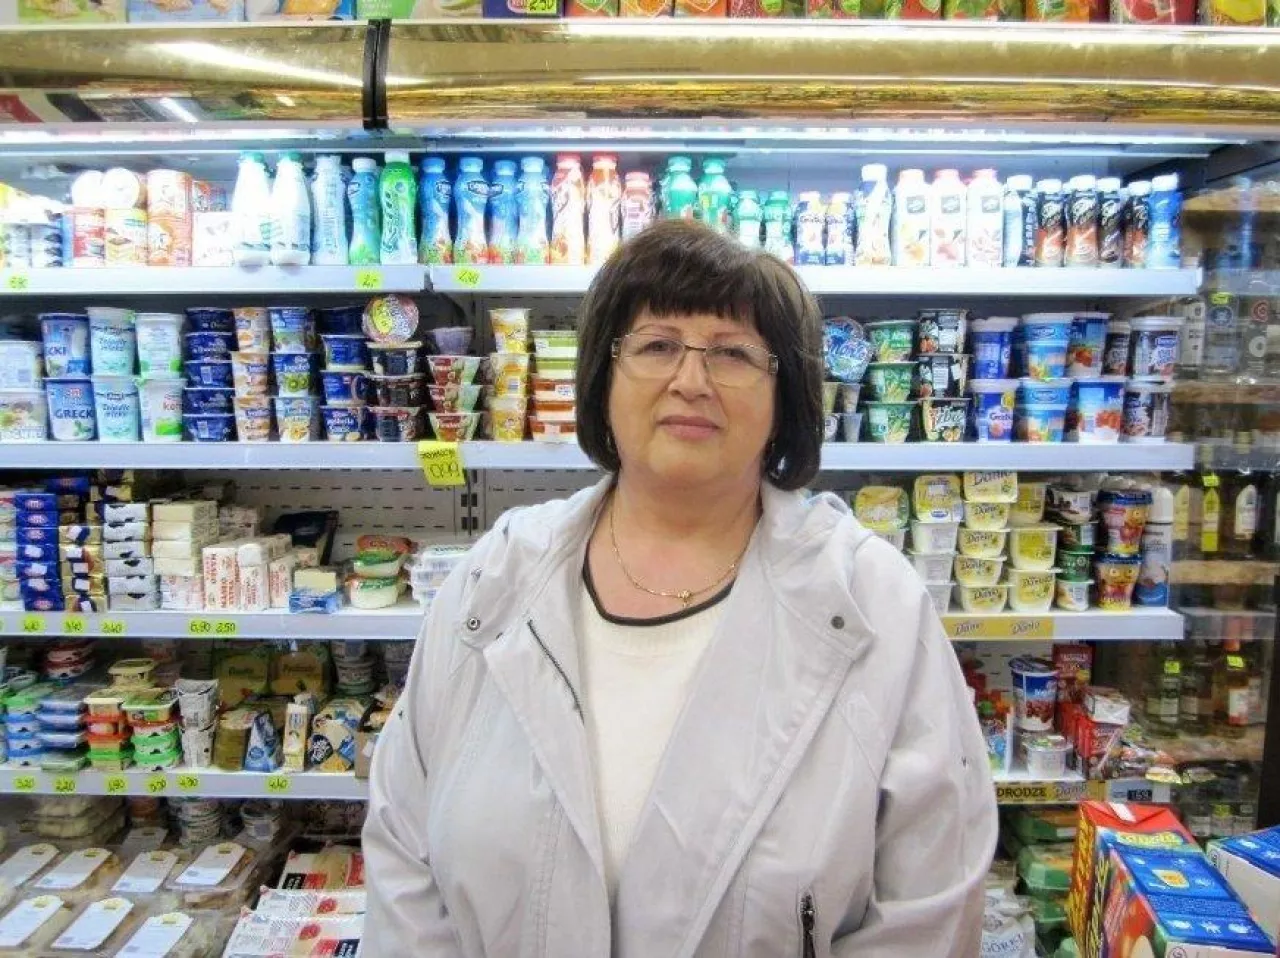 Na zdj. Elżbieta Czacharowska, właścicelka sklepów Delikatesy u Czacharowskiej (fot. wiadomoscihandlowe.pl)